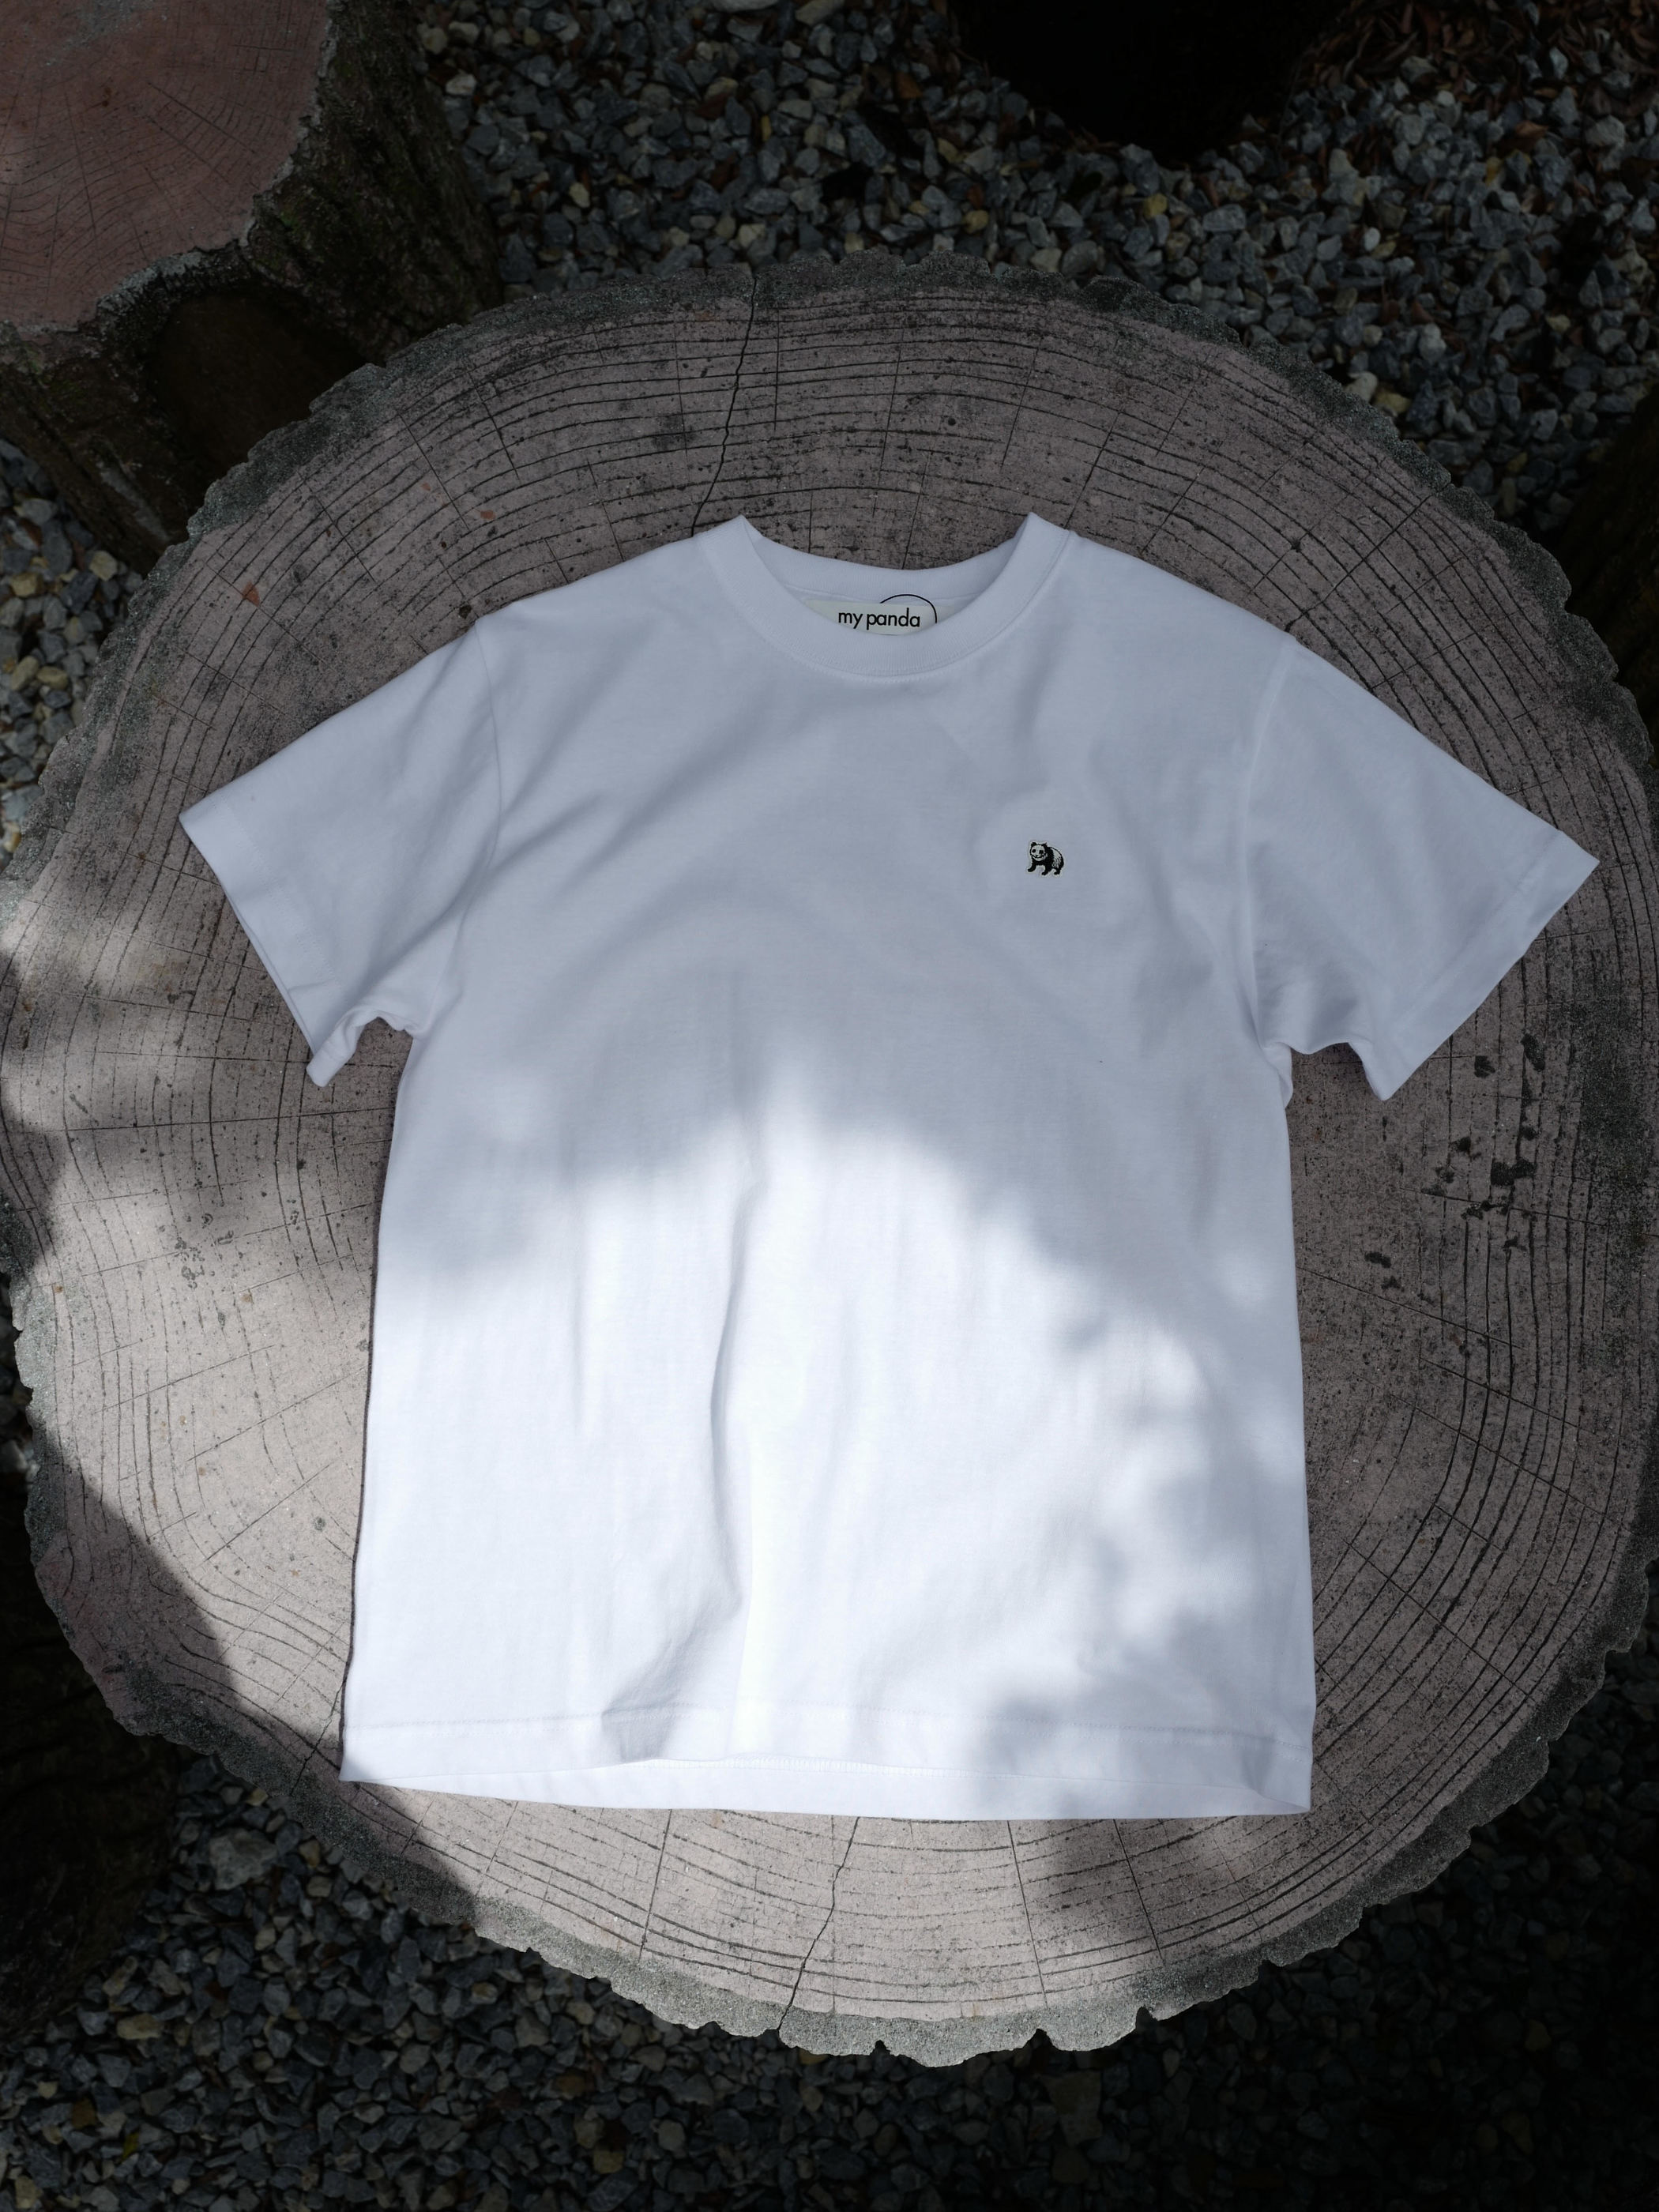 【沖縄スペシャル】twin pandas back print T-shirt・WHITE